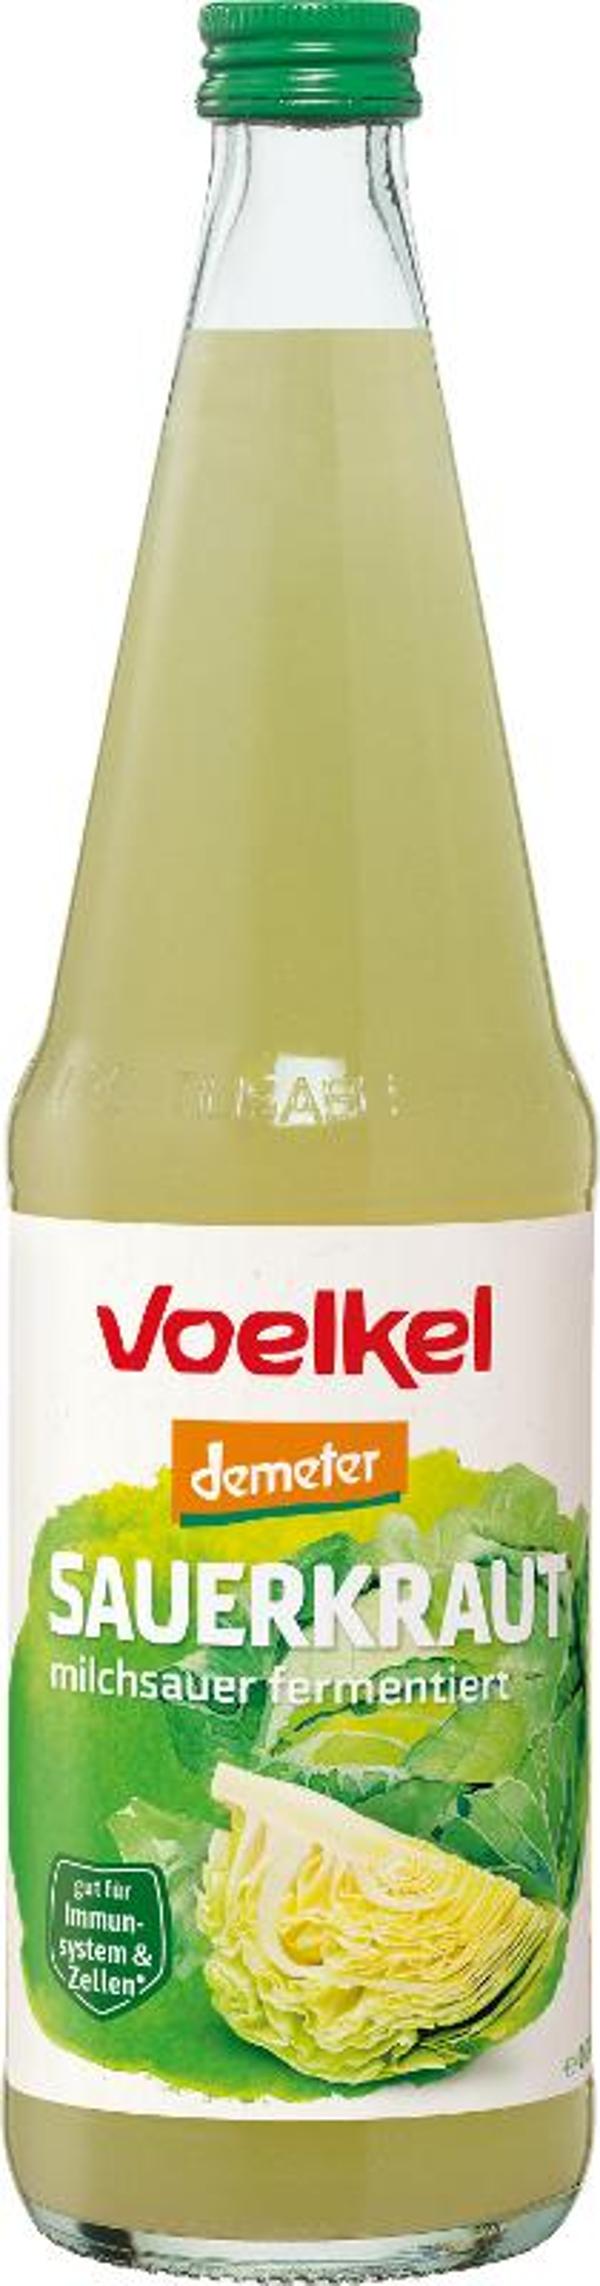 Produktfoto zu Sauerkrautsaft 0,7 l Voelkel